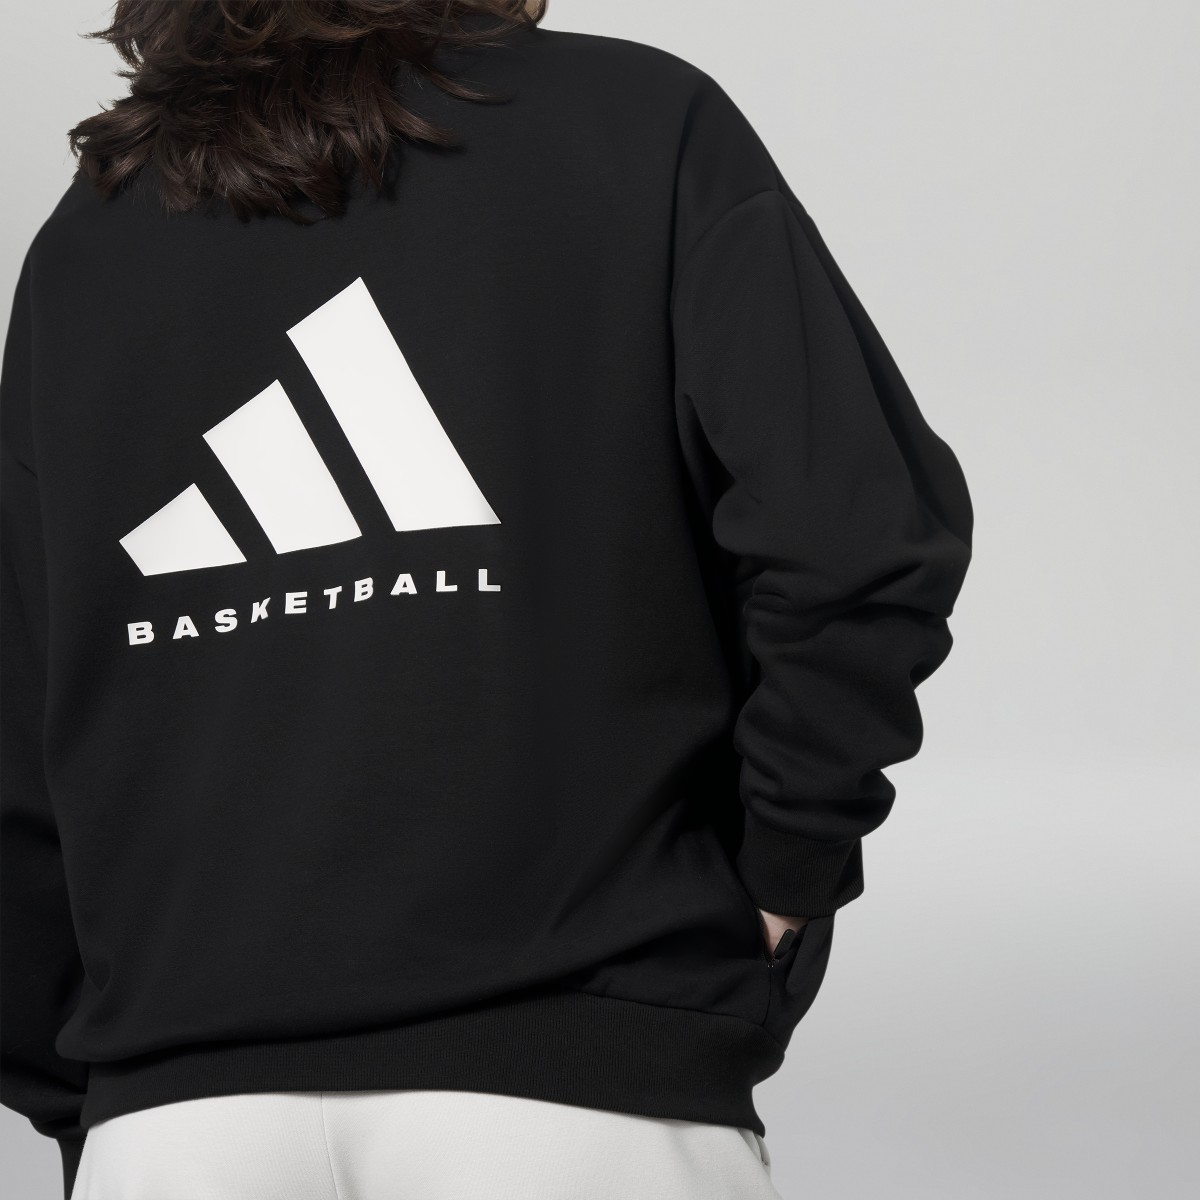 Adidas Basketball Crew Sweatshirt. 5